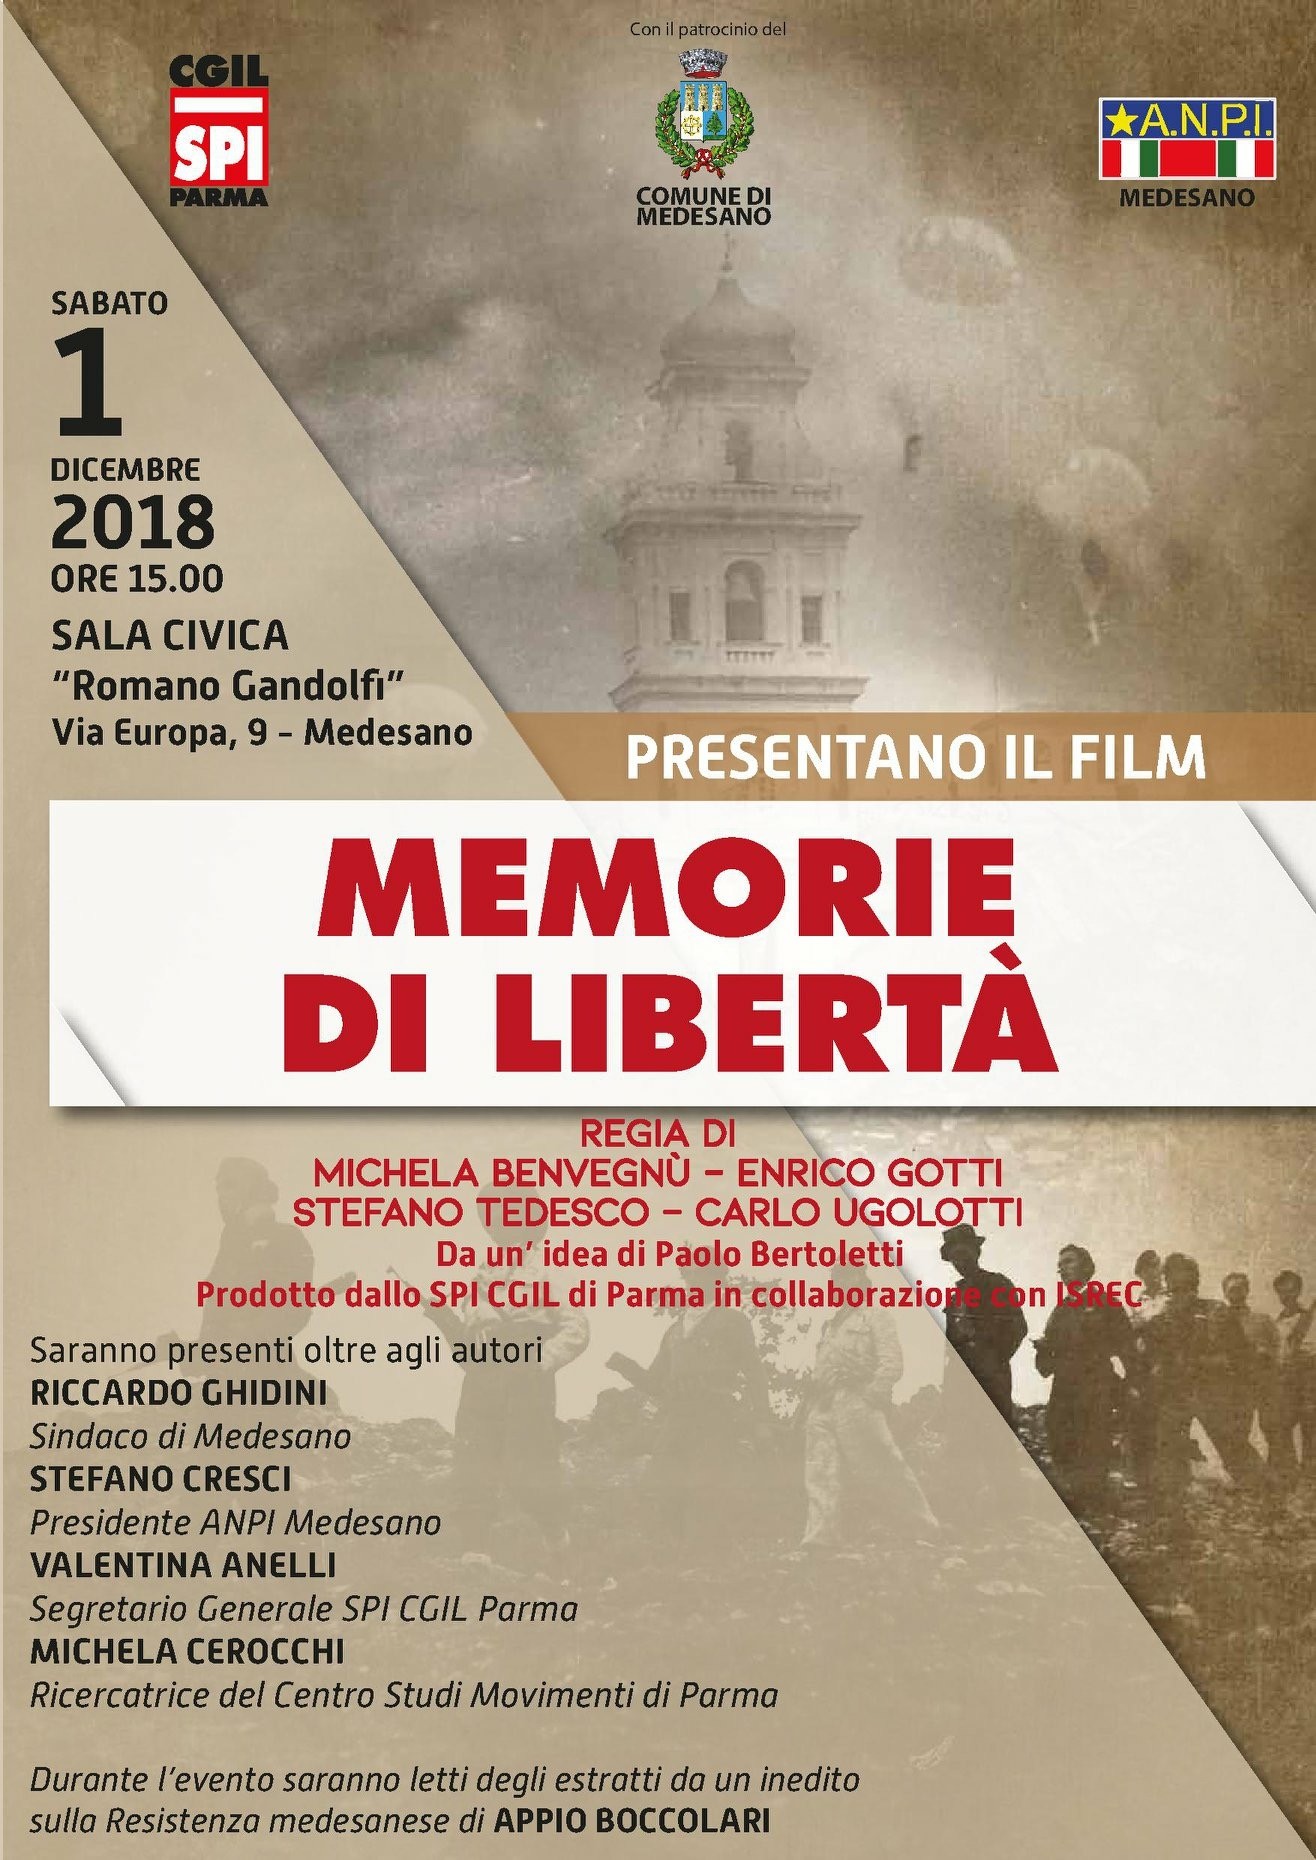 Presentazione del film “Memorie di Libertà” prodotto da SPI CGIL Parma in collaborazione con ISREC.